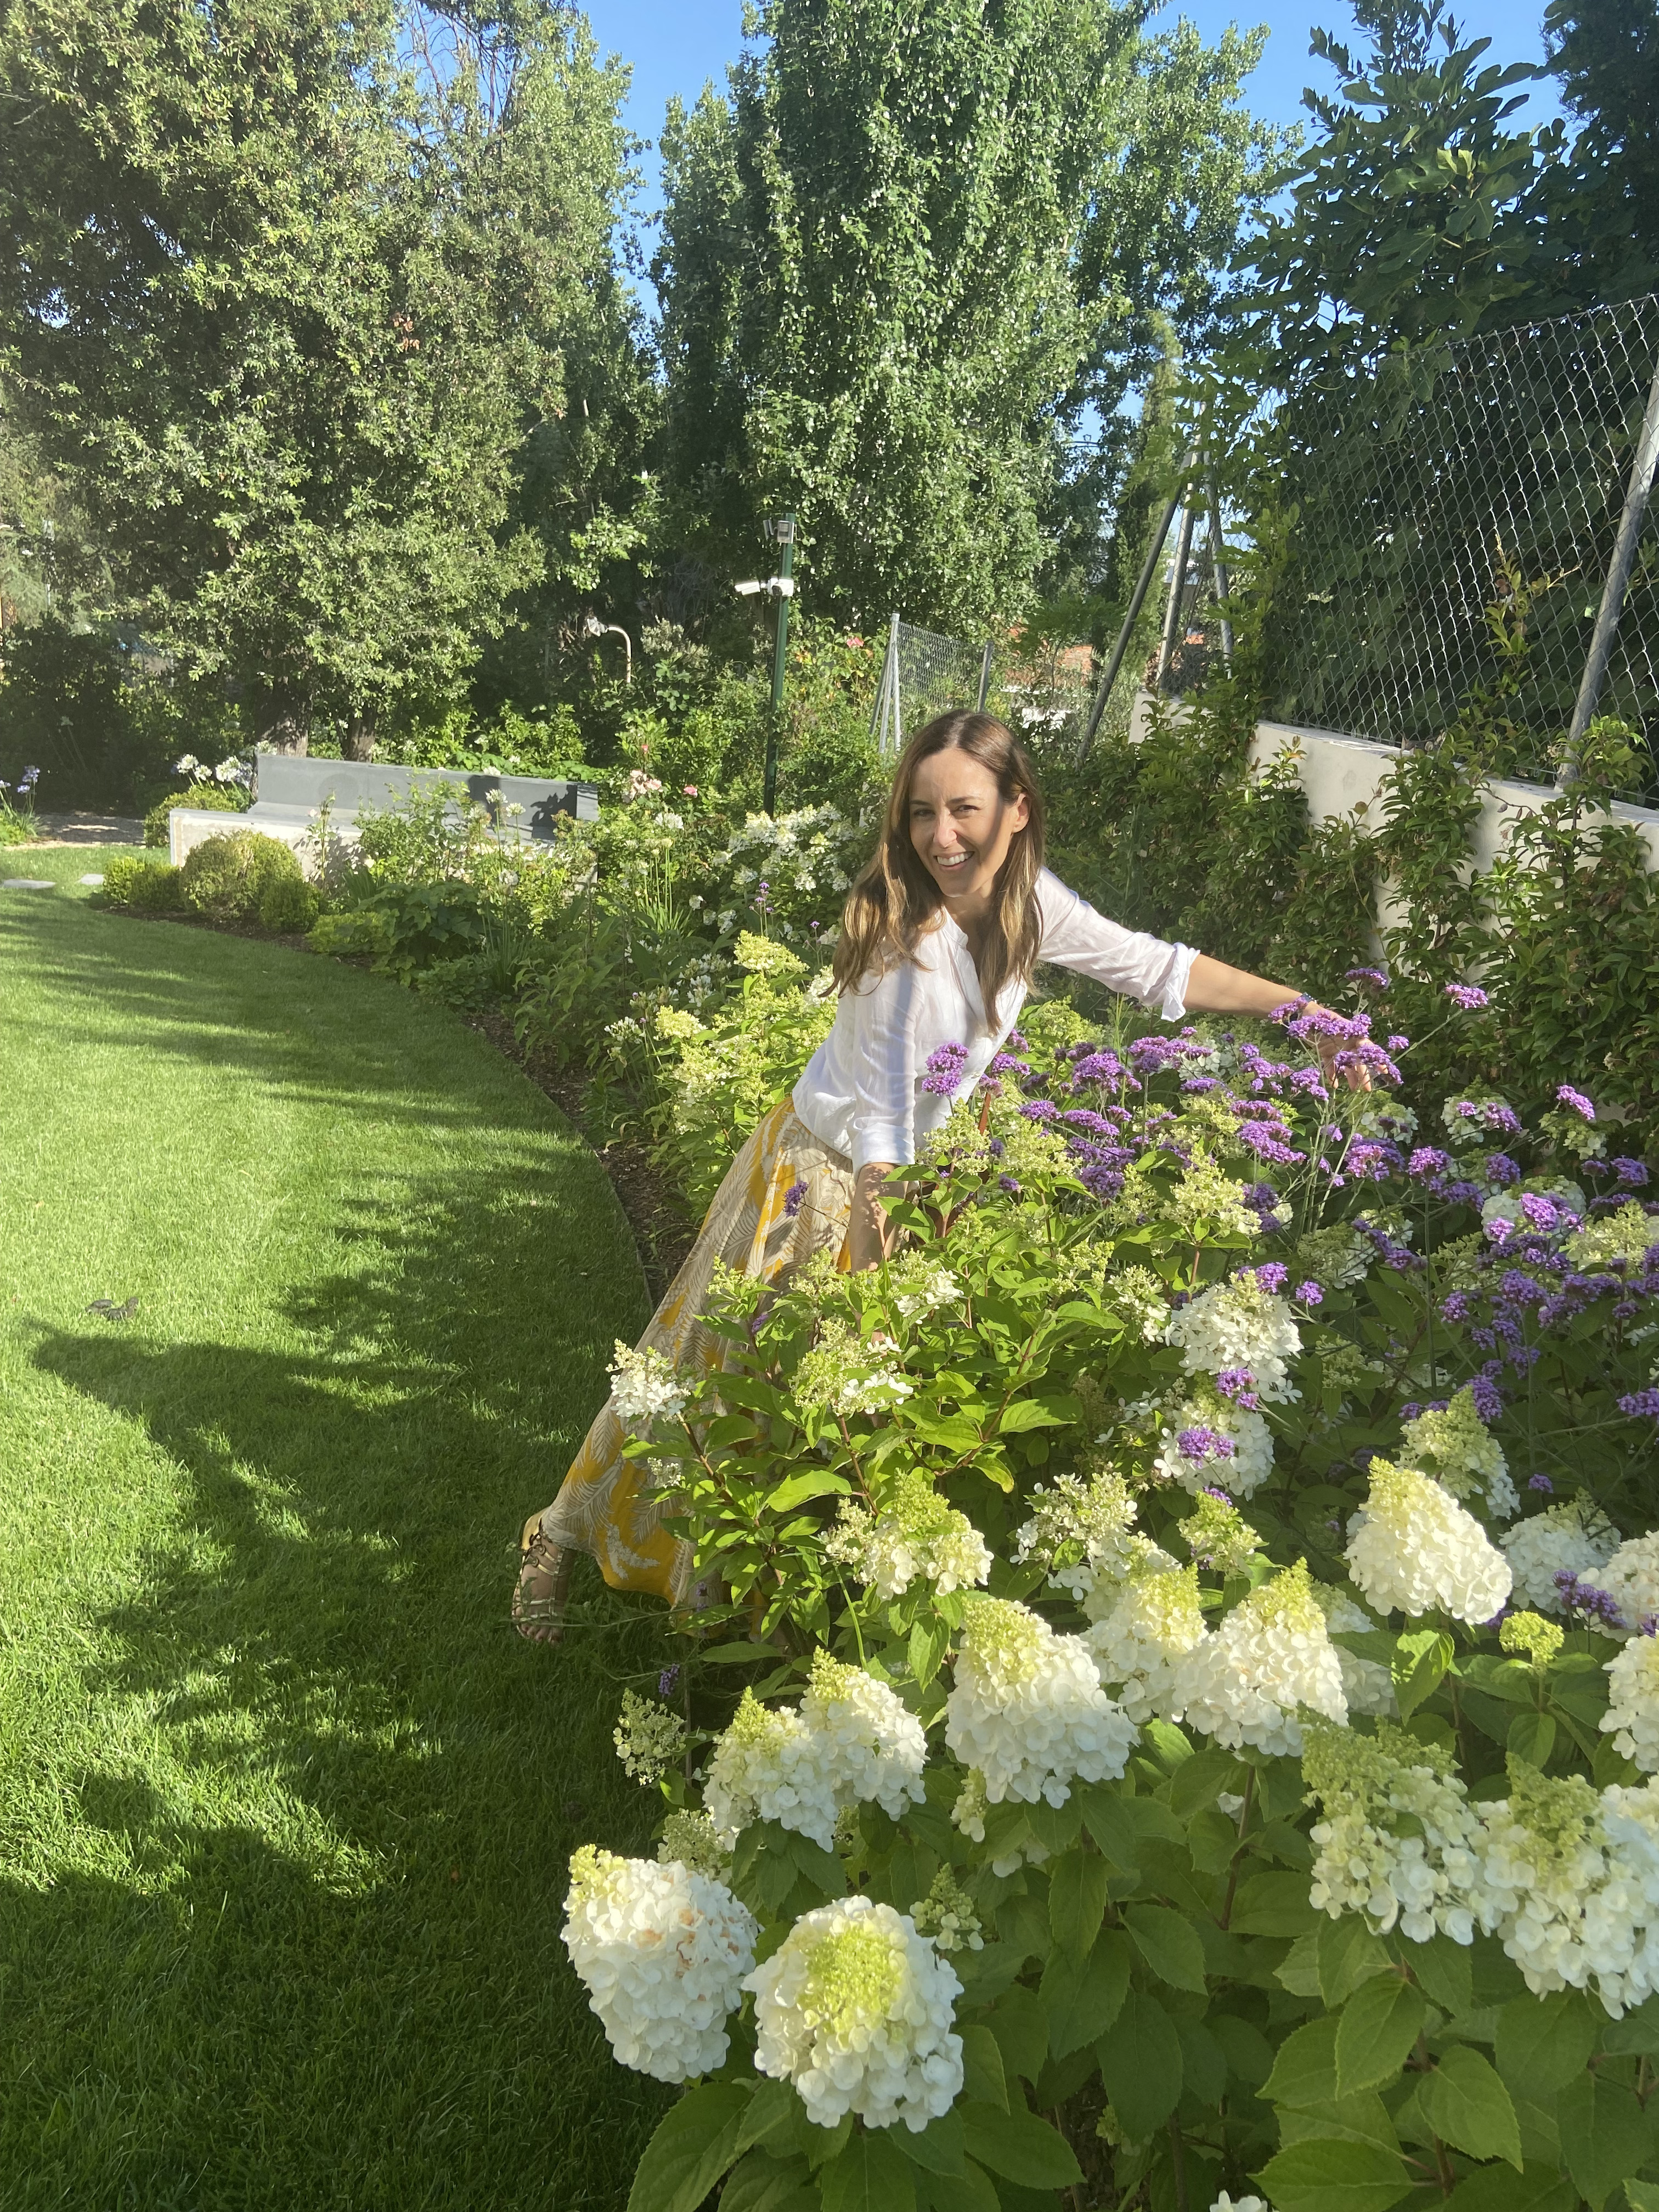 Excepcional adolescente Dalset Isabel Alguacil, paisajista: "Hay que decorar el jardín como si fuera una  habitación más de la casa" | Lifestyle